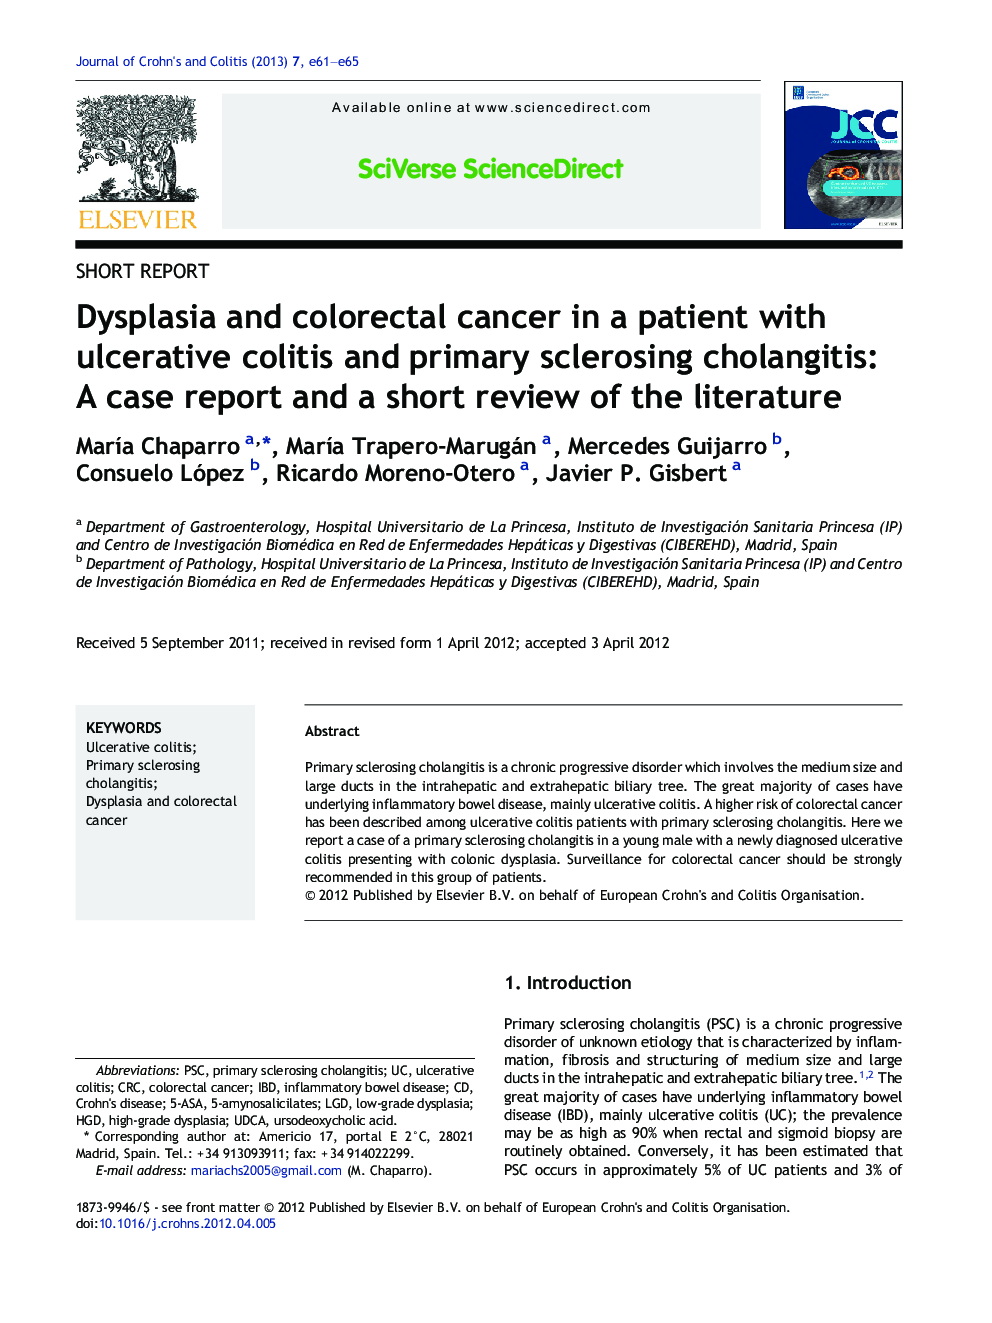 دیسپلازی و سرطان کولورکتال در بیمار مبتلا به کولیت زخمی و کلانژیت اسکلروزیس اولیه: یک گزارش موردی و یک مرور کوتاه از ادبیات 